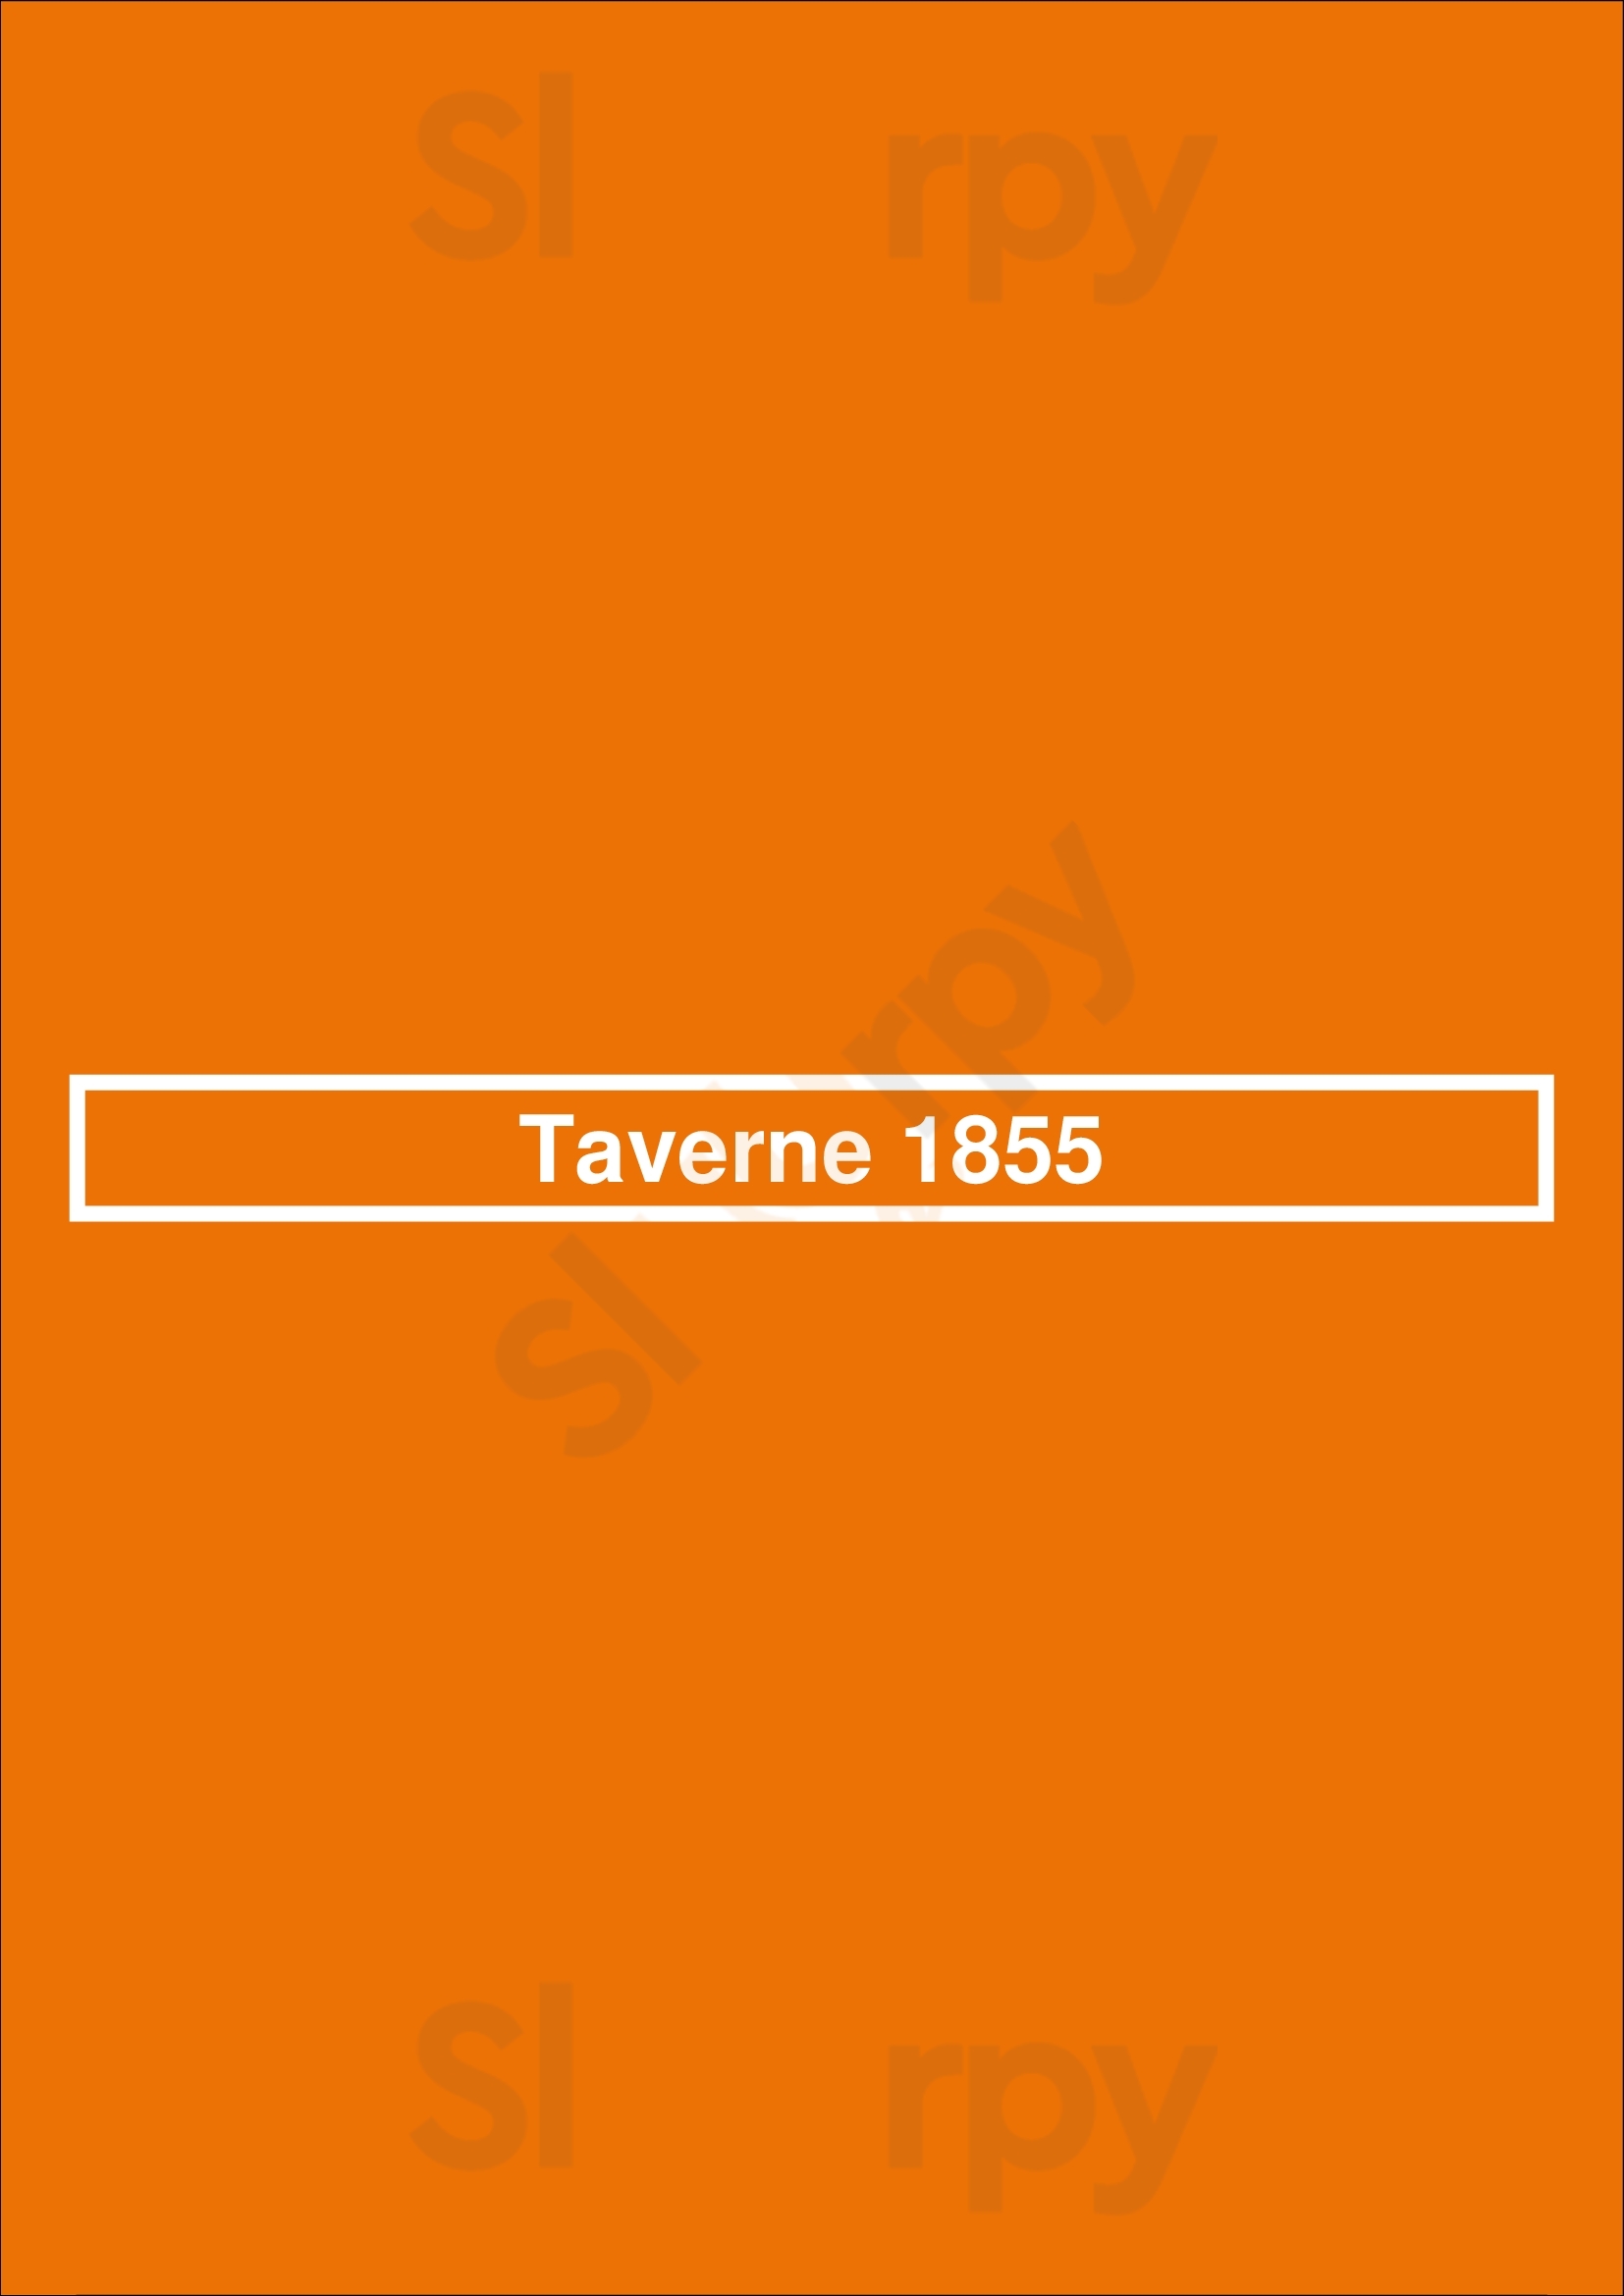 Taverne 1855 Magog Menu - 1